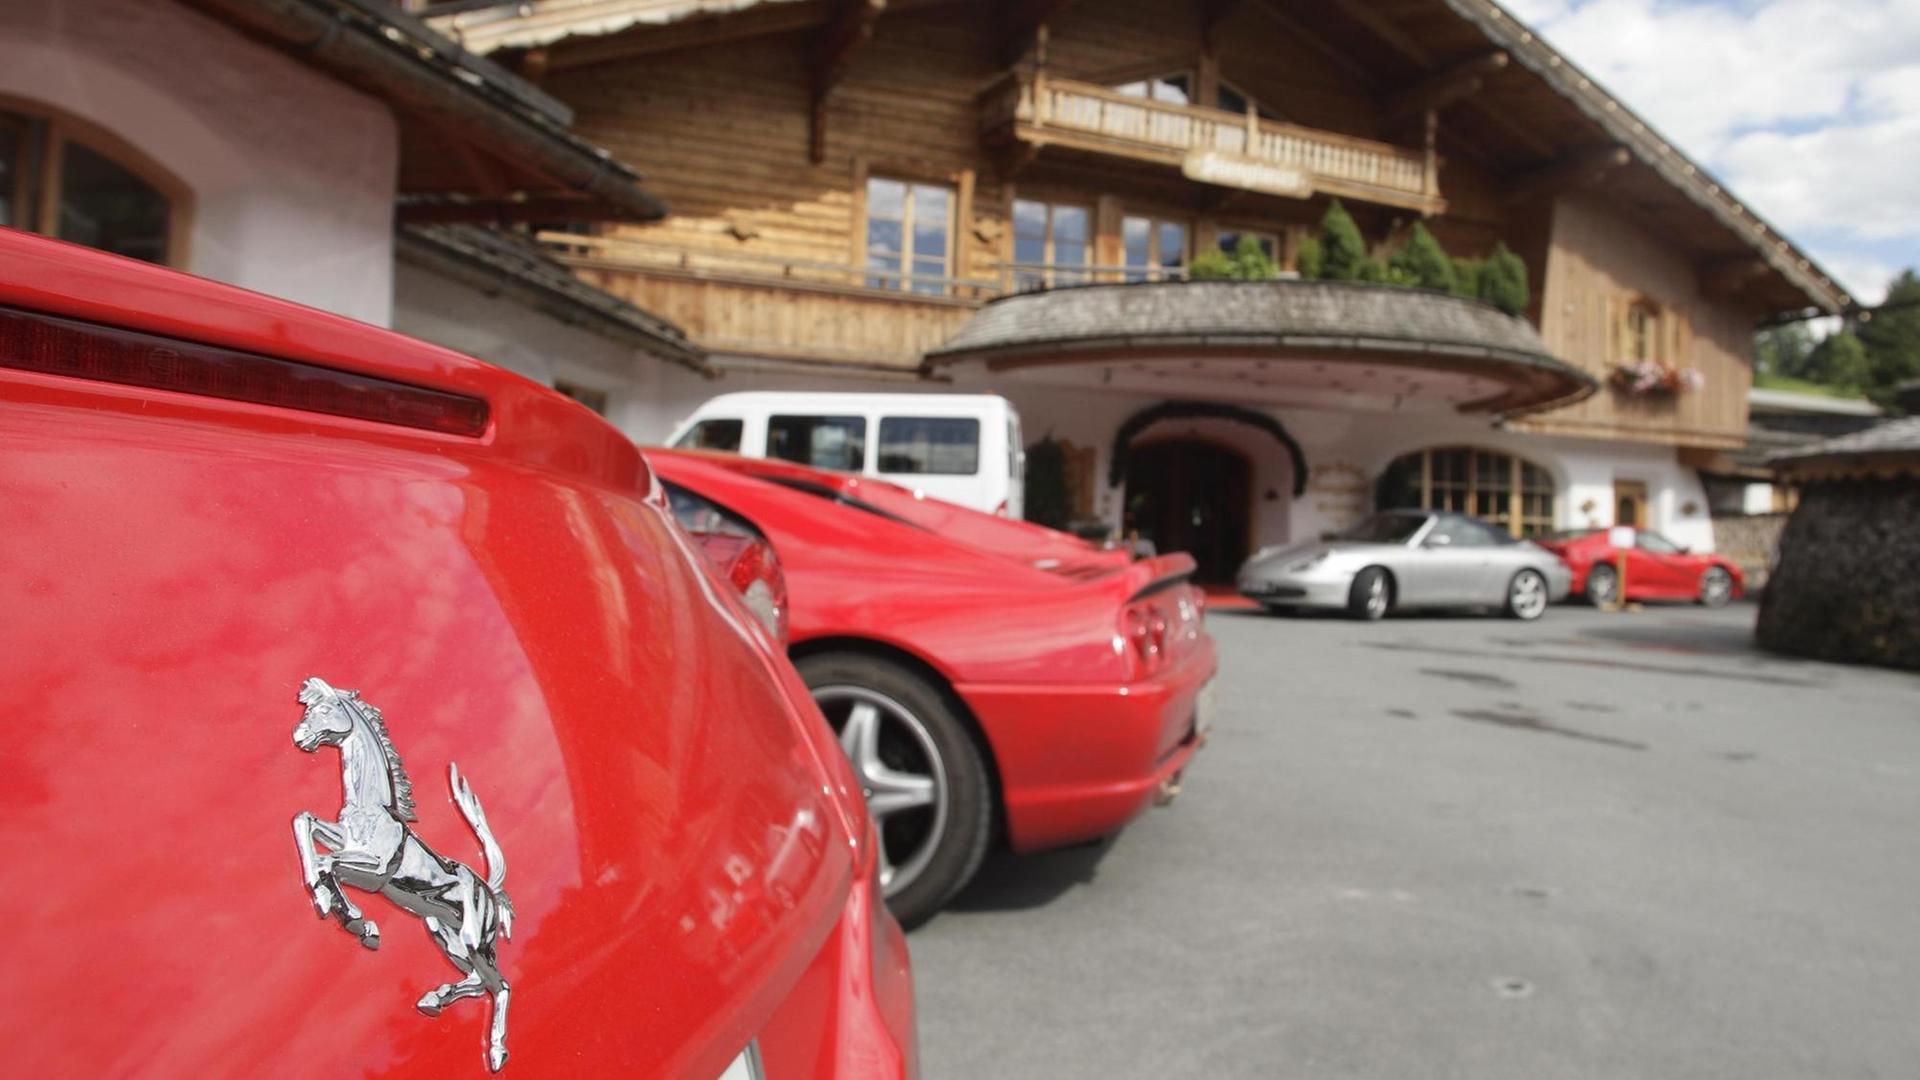 Ansammlung von roten Ferrari Autos auf dem Parkplatz vom 5 Sterne Bio- und Wellnesshotel Stanglwirt in Going, Tirol, Österreich